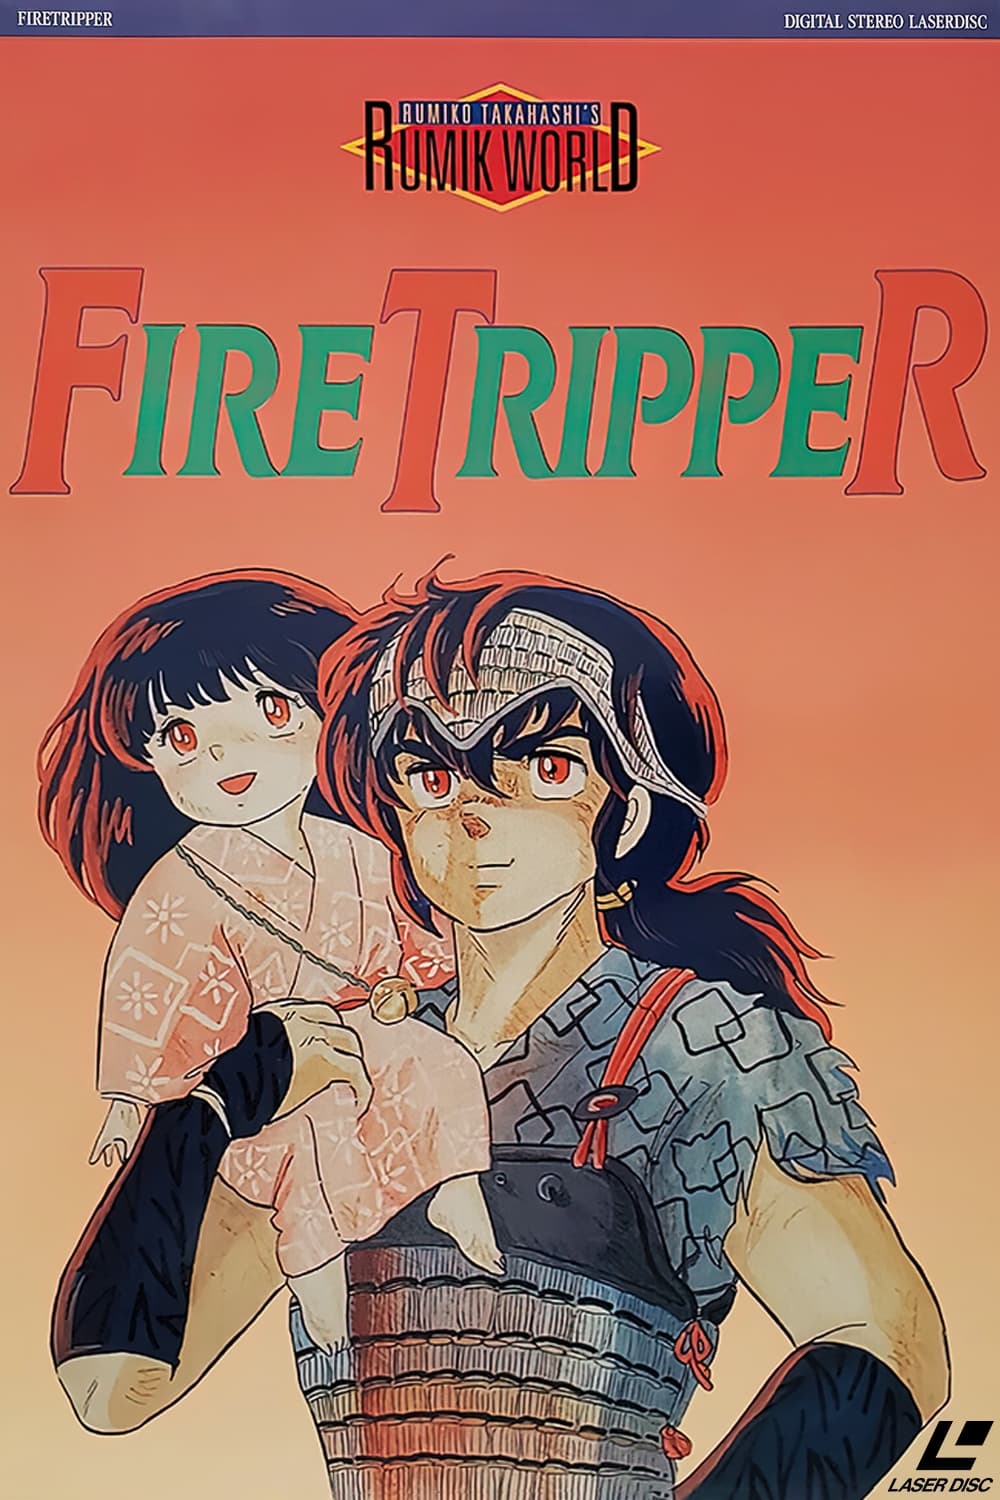 Fire Tripper